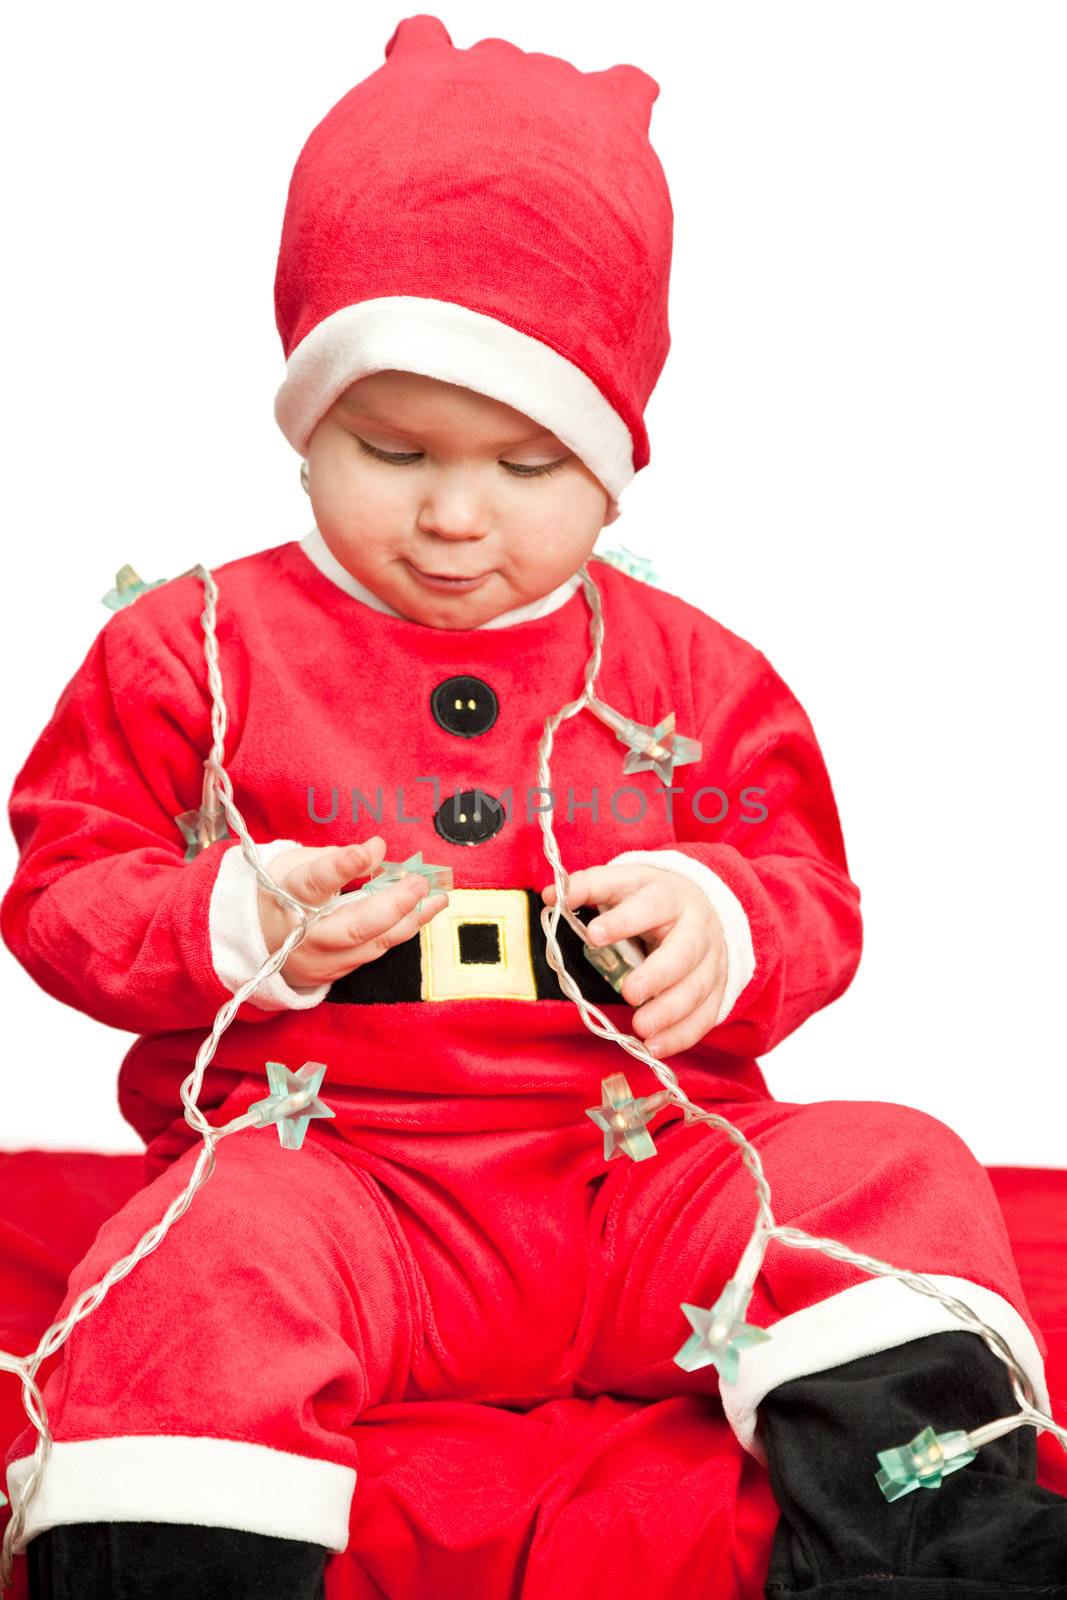 Baby wearing Santa suit by naumoid